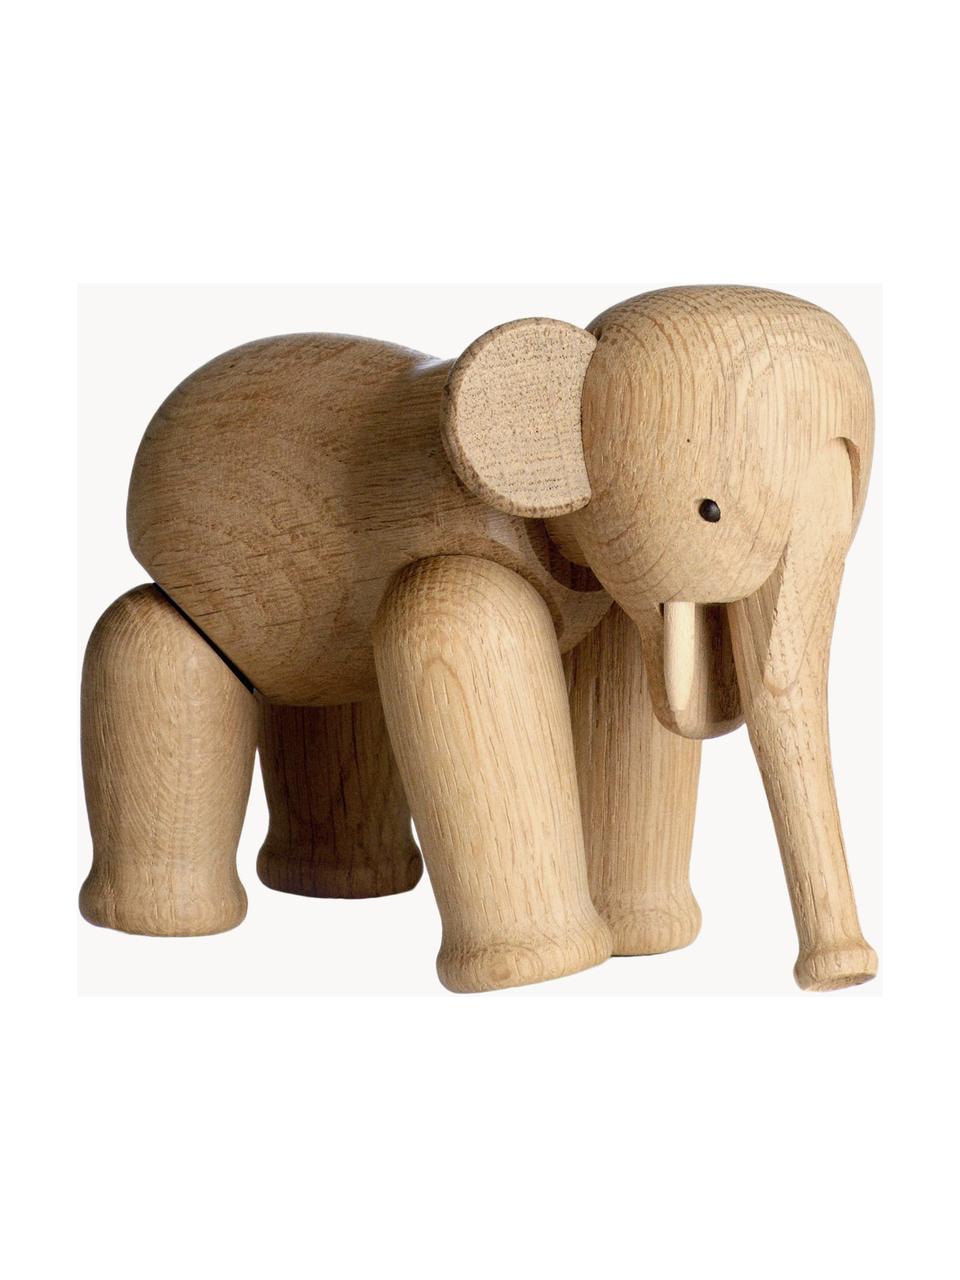 Dekorácia Elefant, Dubové drevo, Svetlohnedá, Š 17 x V 12 cm